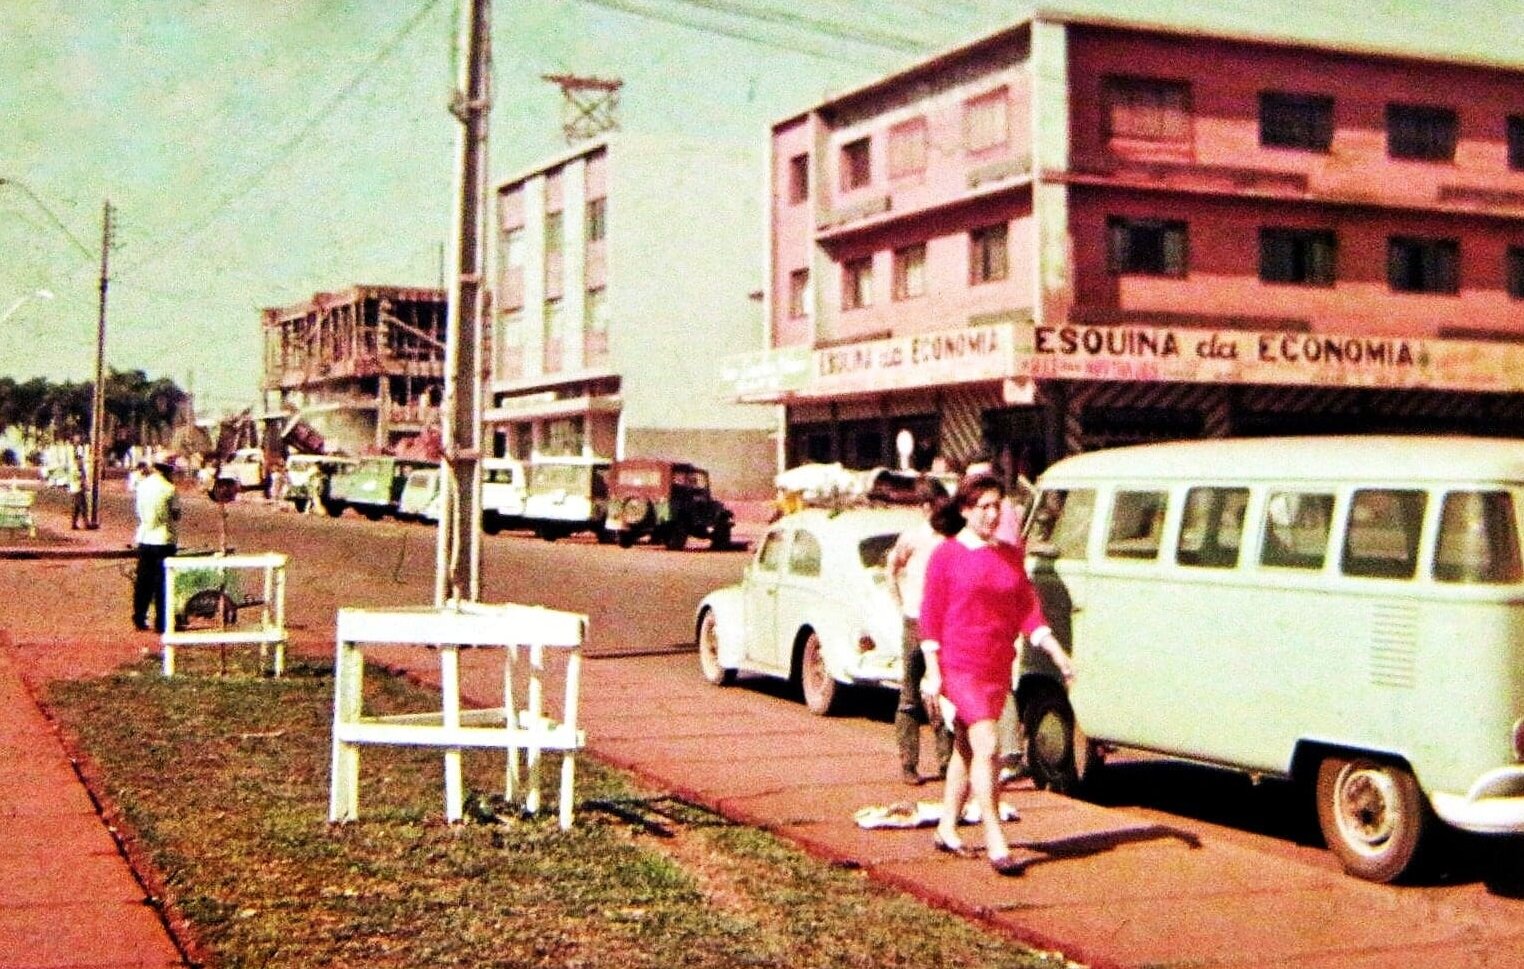 Cruzamento da Avenida Brasil com a Rua Souza Naves - 1968